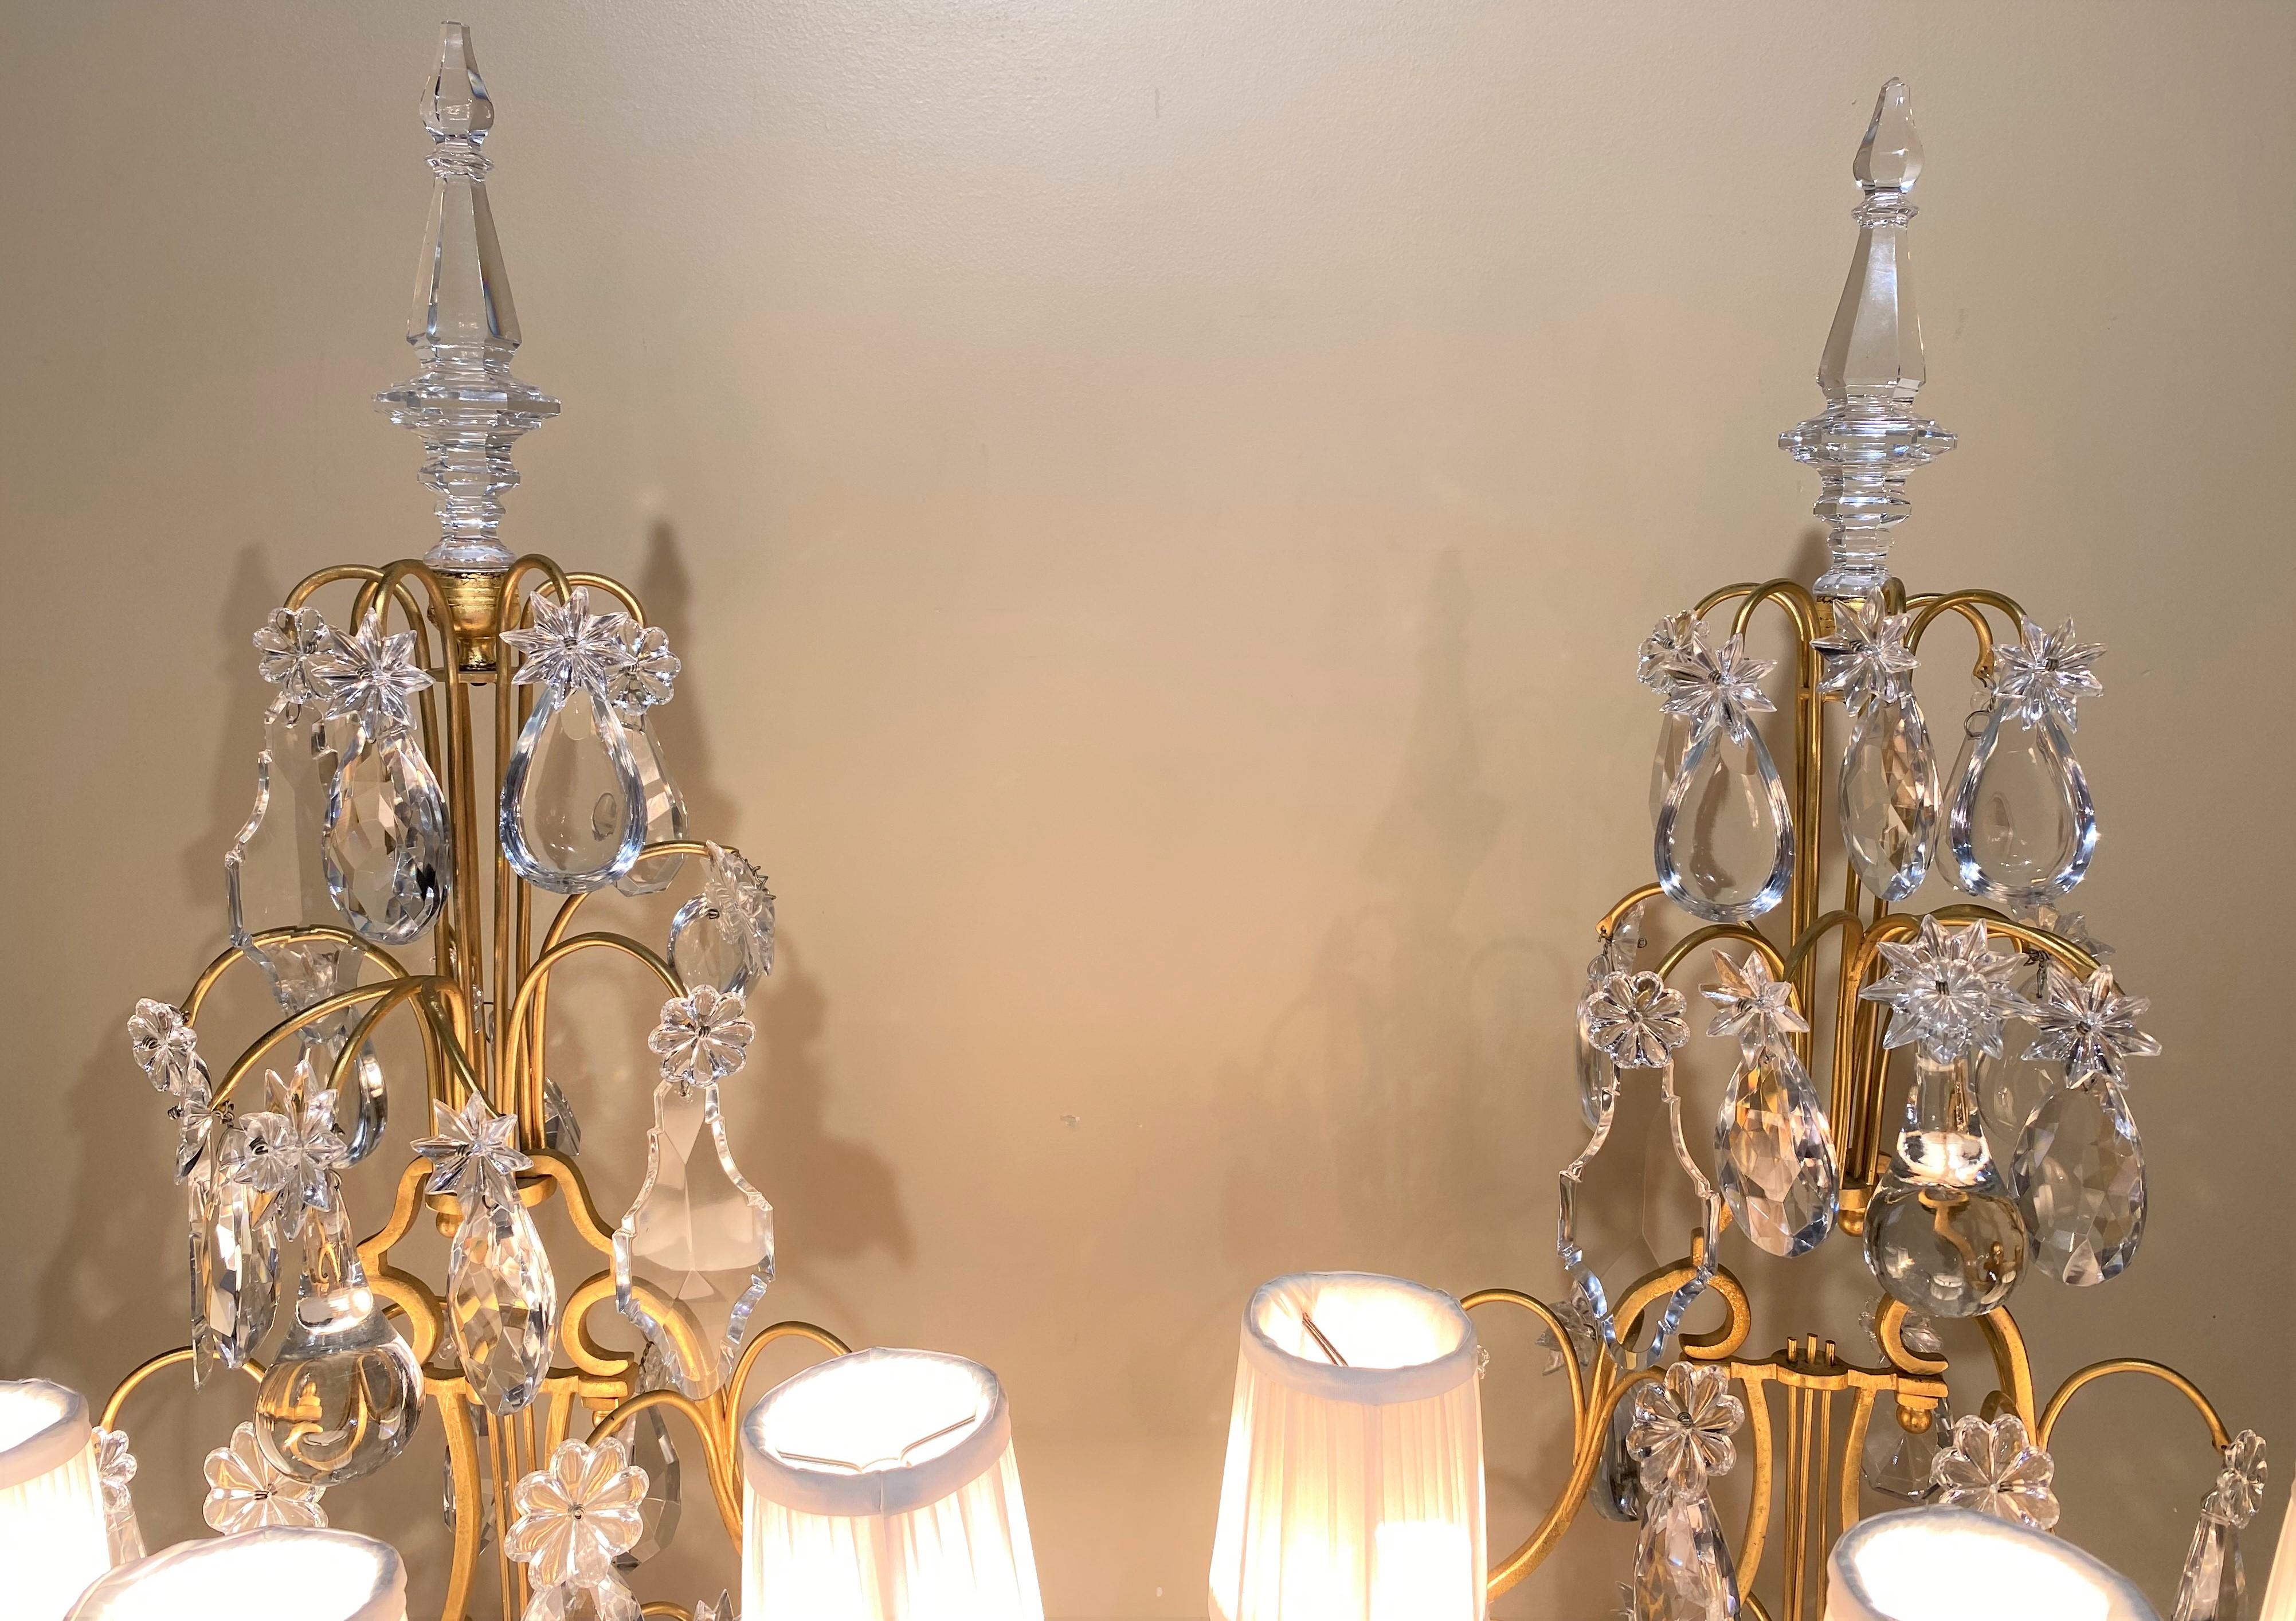 Magnifique paire de garnitures à trois lumières de style Louis XV avec des bases peintes en faux marbre ou en vert malachite, quatre niveaux de prismes en cristal taillé de différentes formes, ainsi que des épis de faîtage en verre en forme de